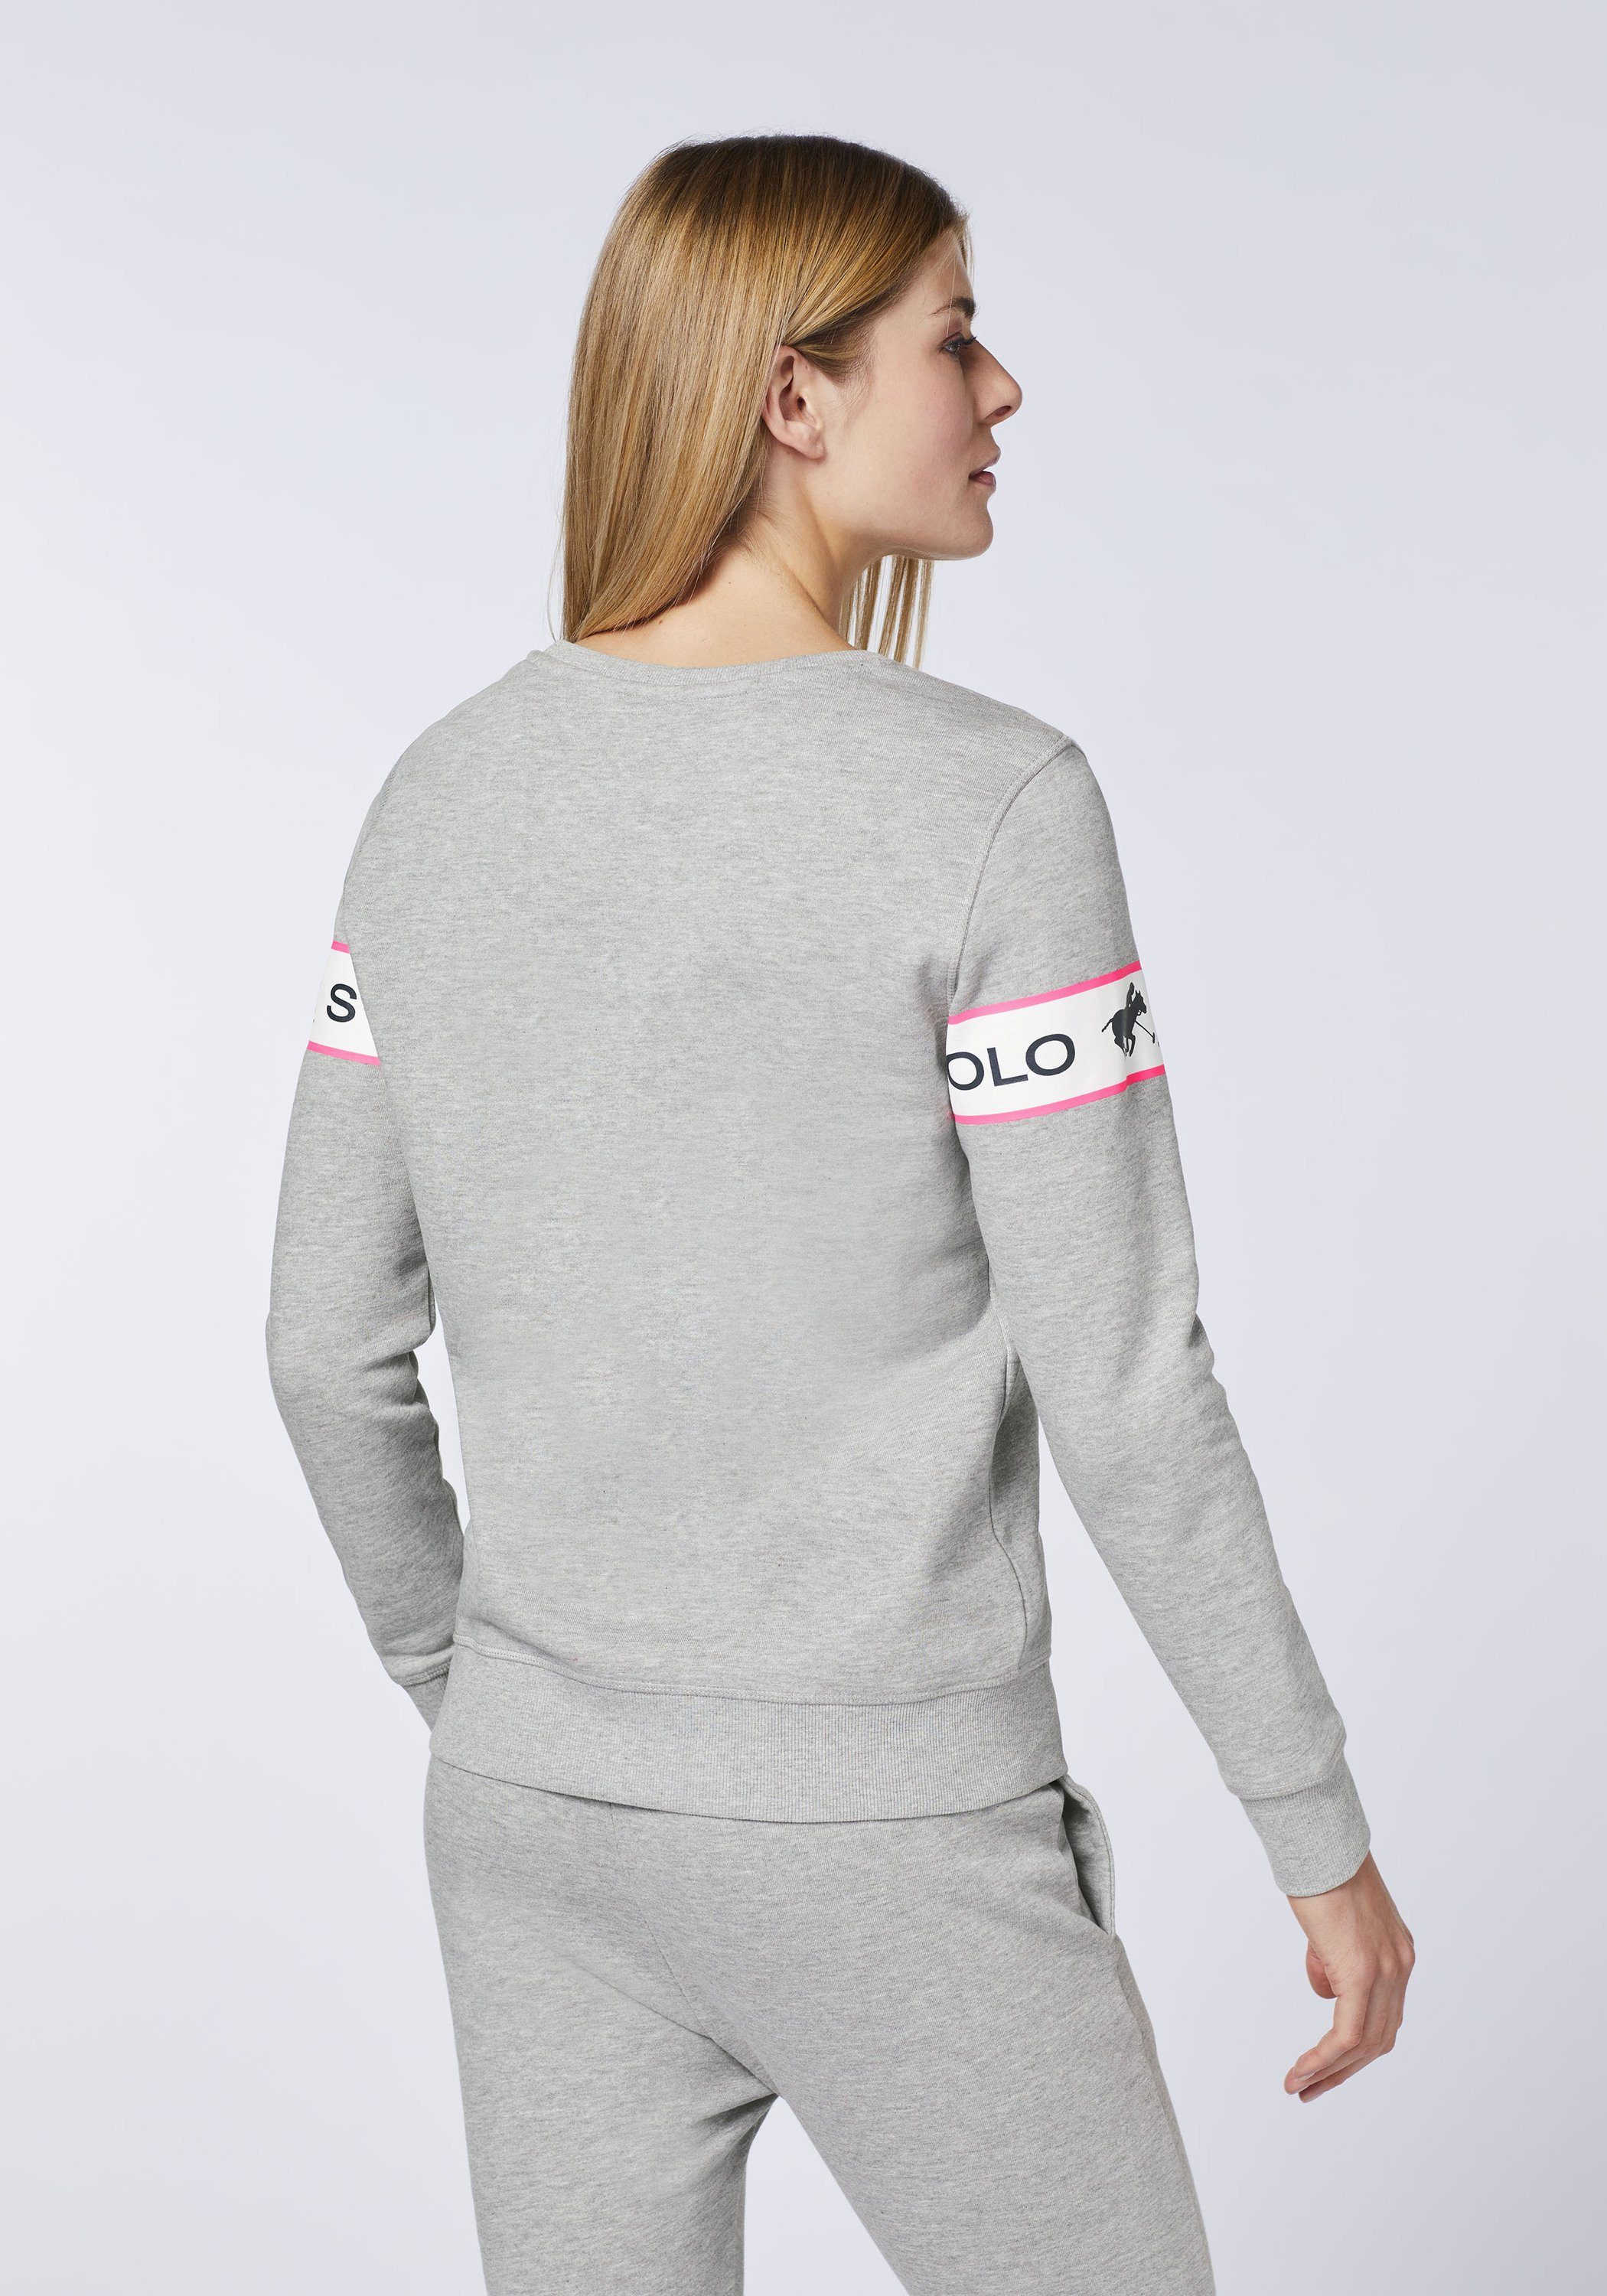 Polo Sylt Sweatshirt 17-4402M Logo-Kontraststreifen Gray eingearbeitetem Neutral mit Melange